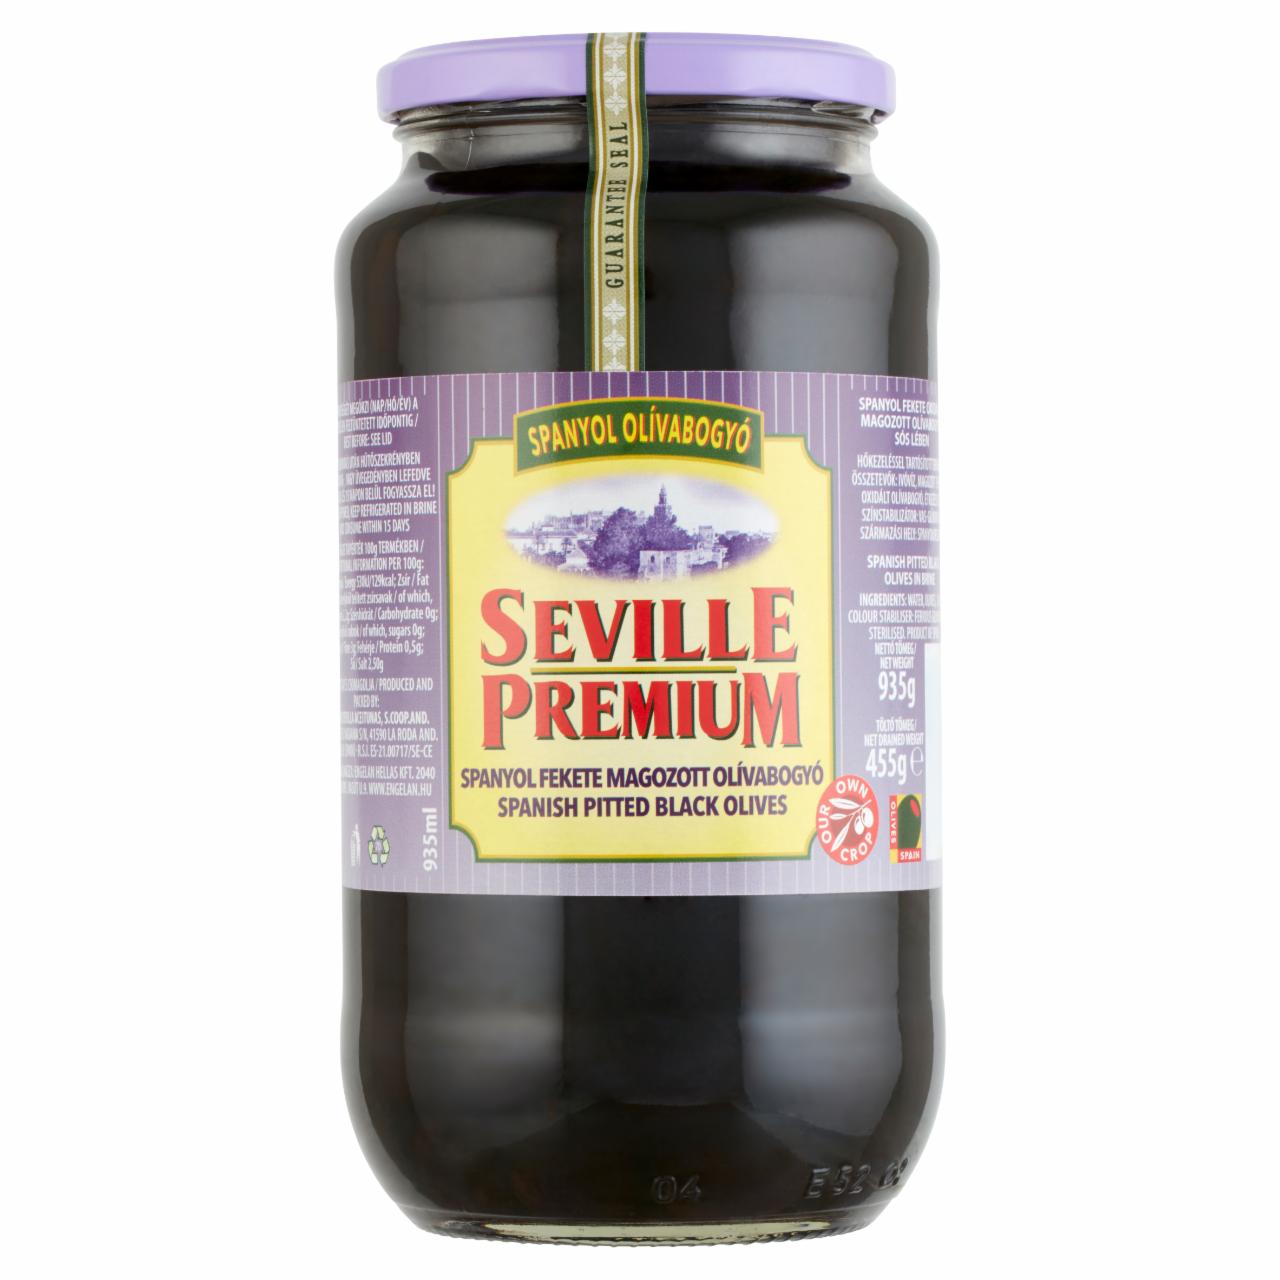 Képek - Seville Premium spanyol fekete magozott olívabogyó sós lében 935 g